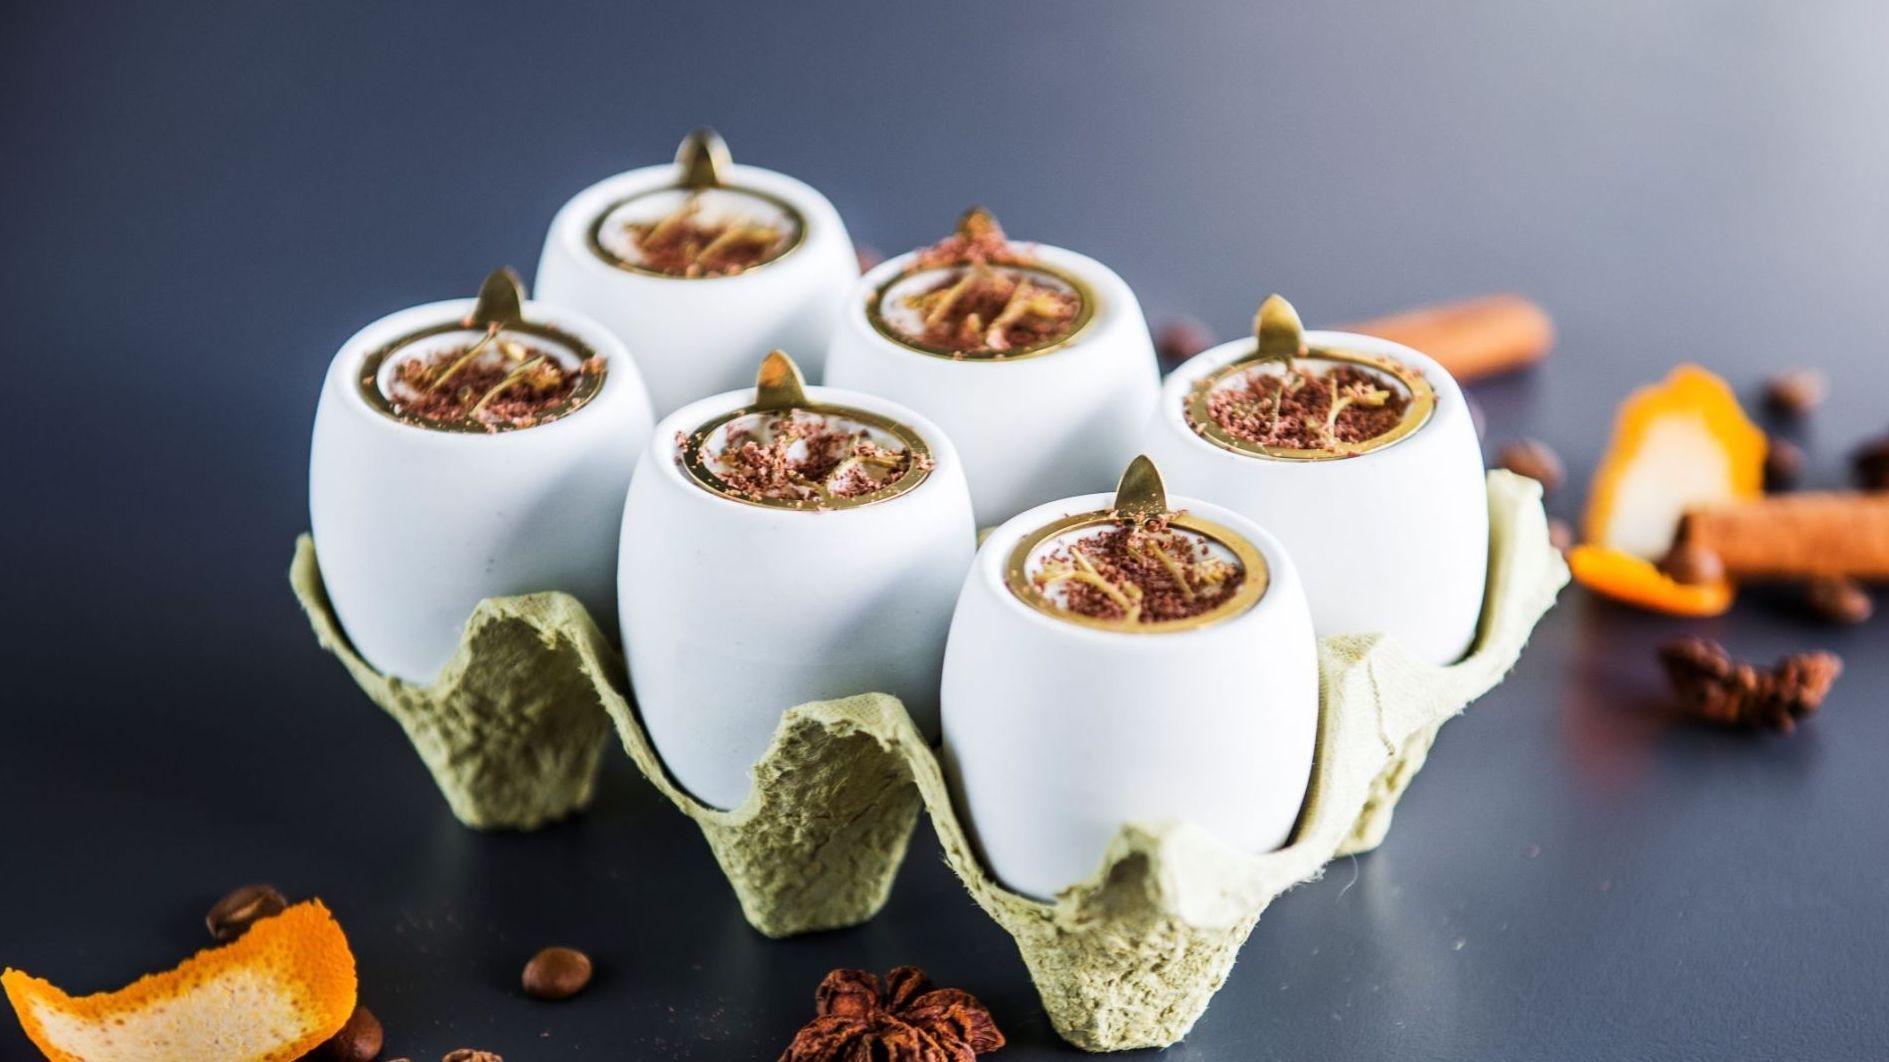 FESTDESSERT: Små kopper med eggnog er en perfekt påskedessert, både for barn og voksne. Foto: Fredrik Ringe/VG